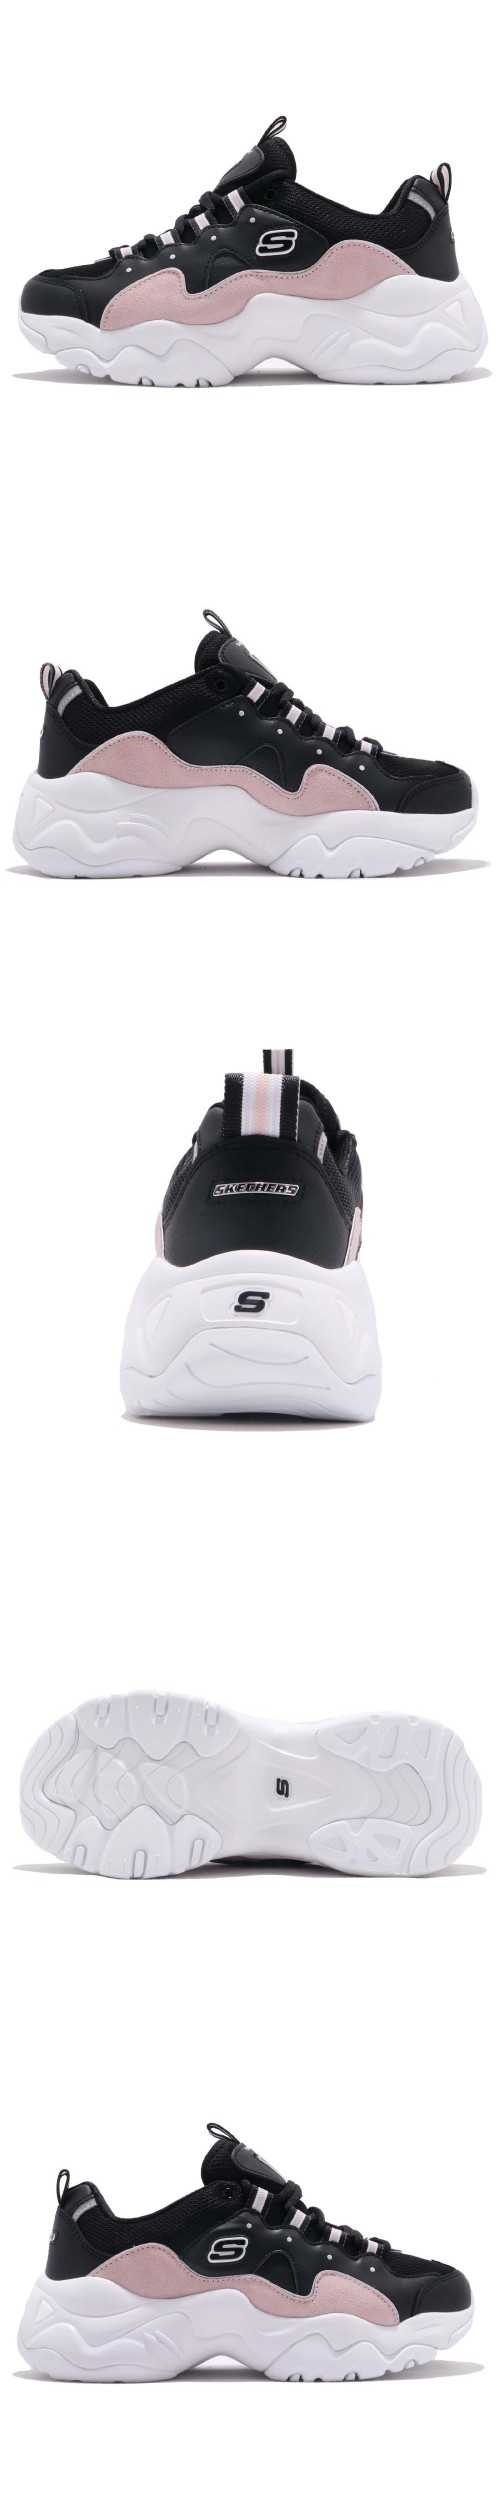 Skechers 休閒鞋 D Lites 3.0 復古 女鞋